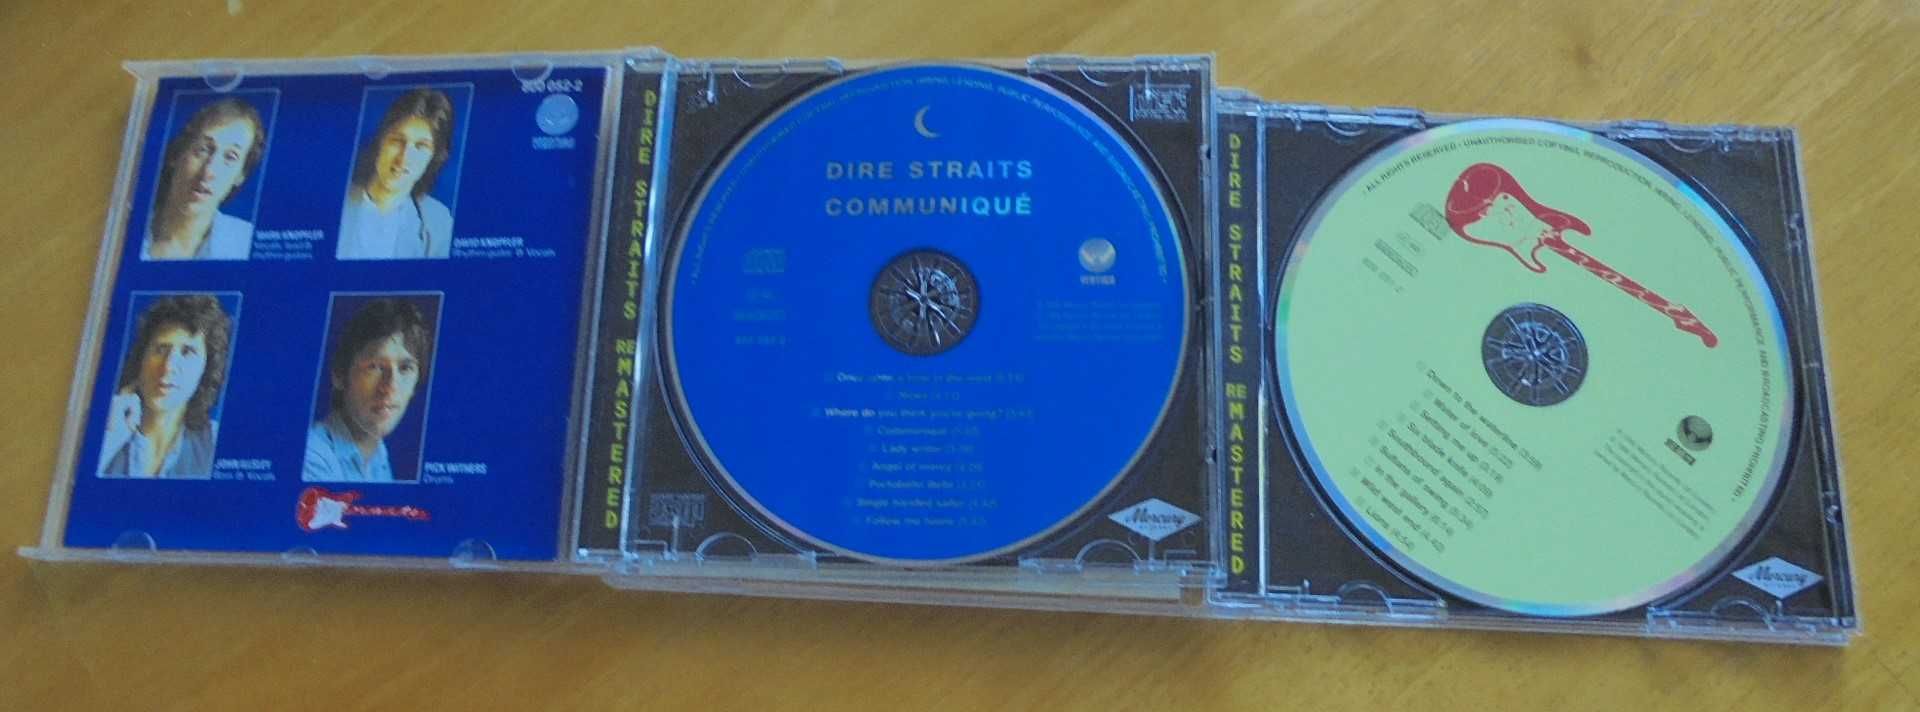 2 płyty CD Dire Straits